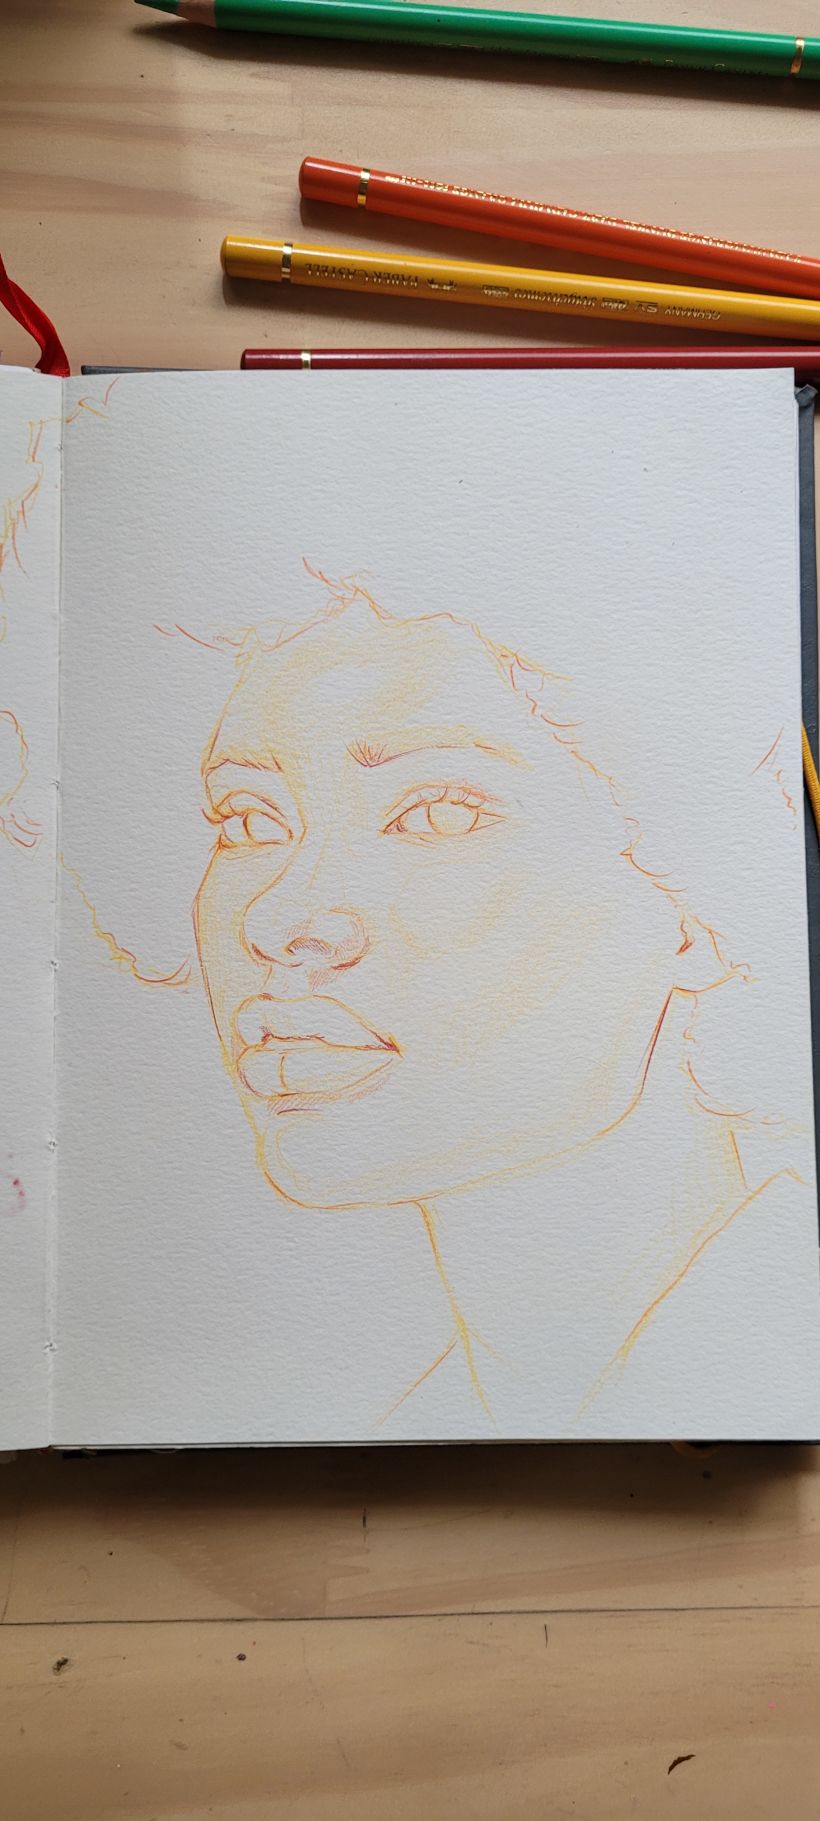 Meu projeto do curso: Desenho de retratos vibrantes com lápis de cor 10